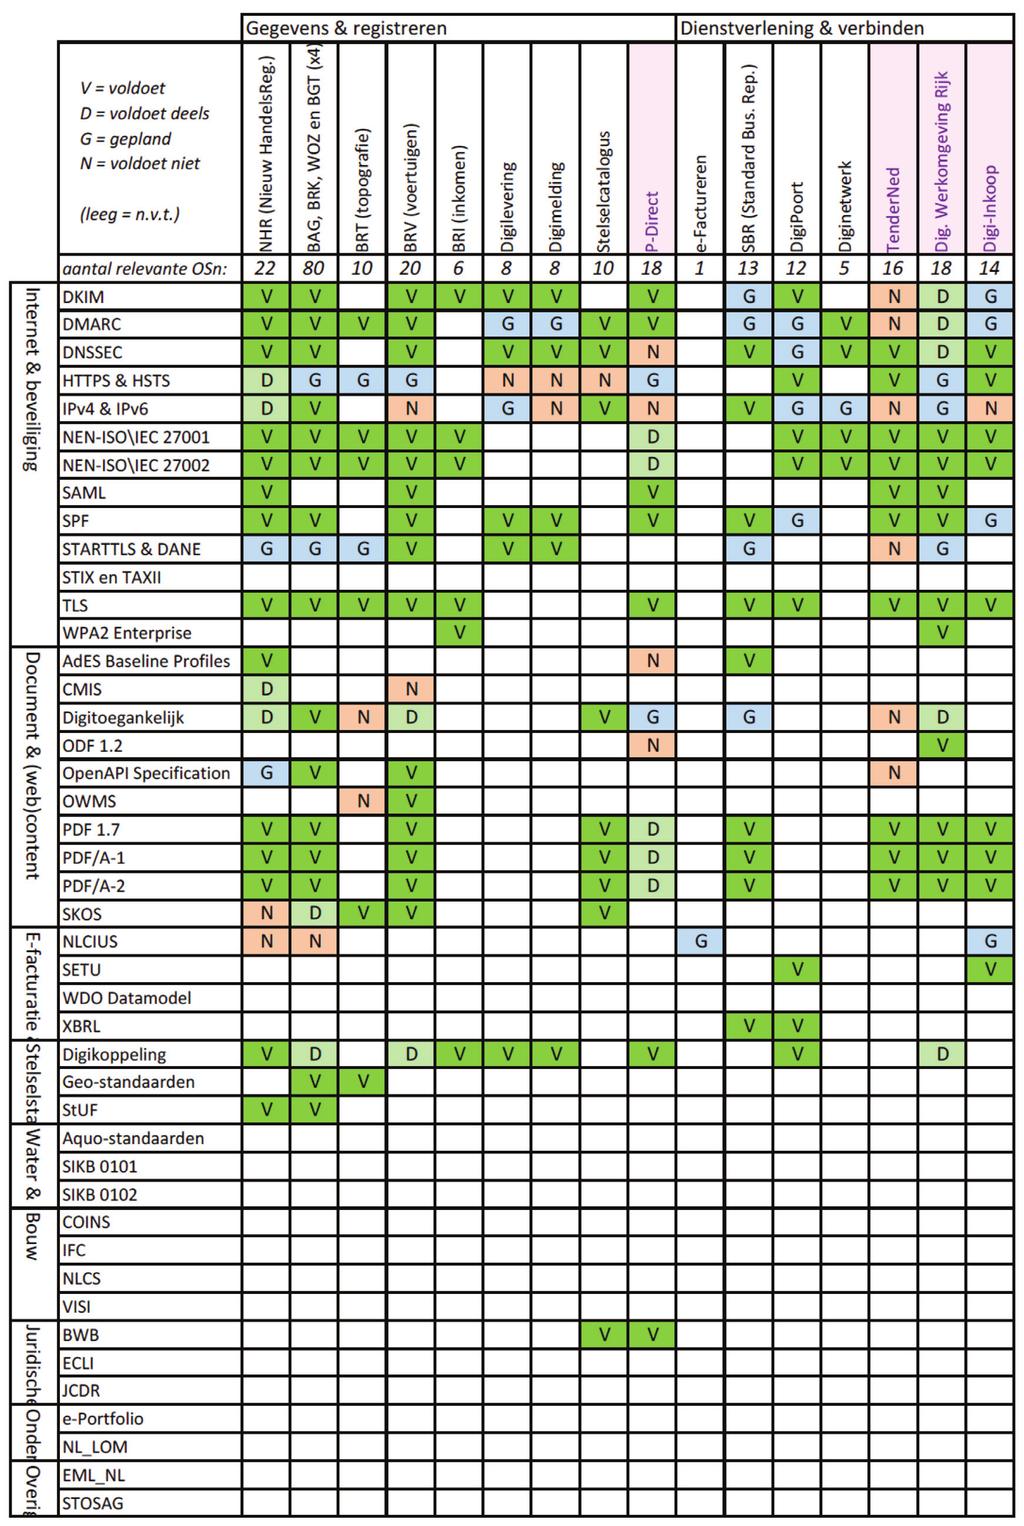 Tabel 8b: Toepassing open standaarden in 35 voorzieningen